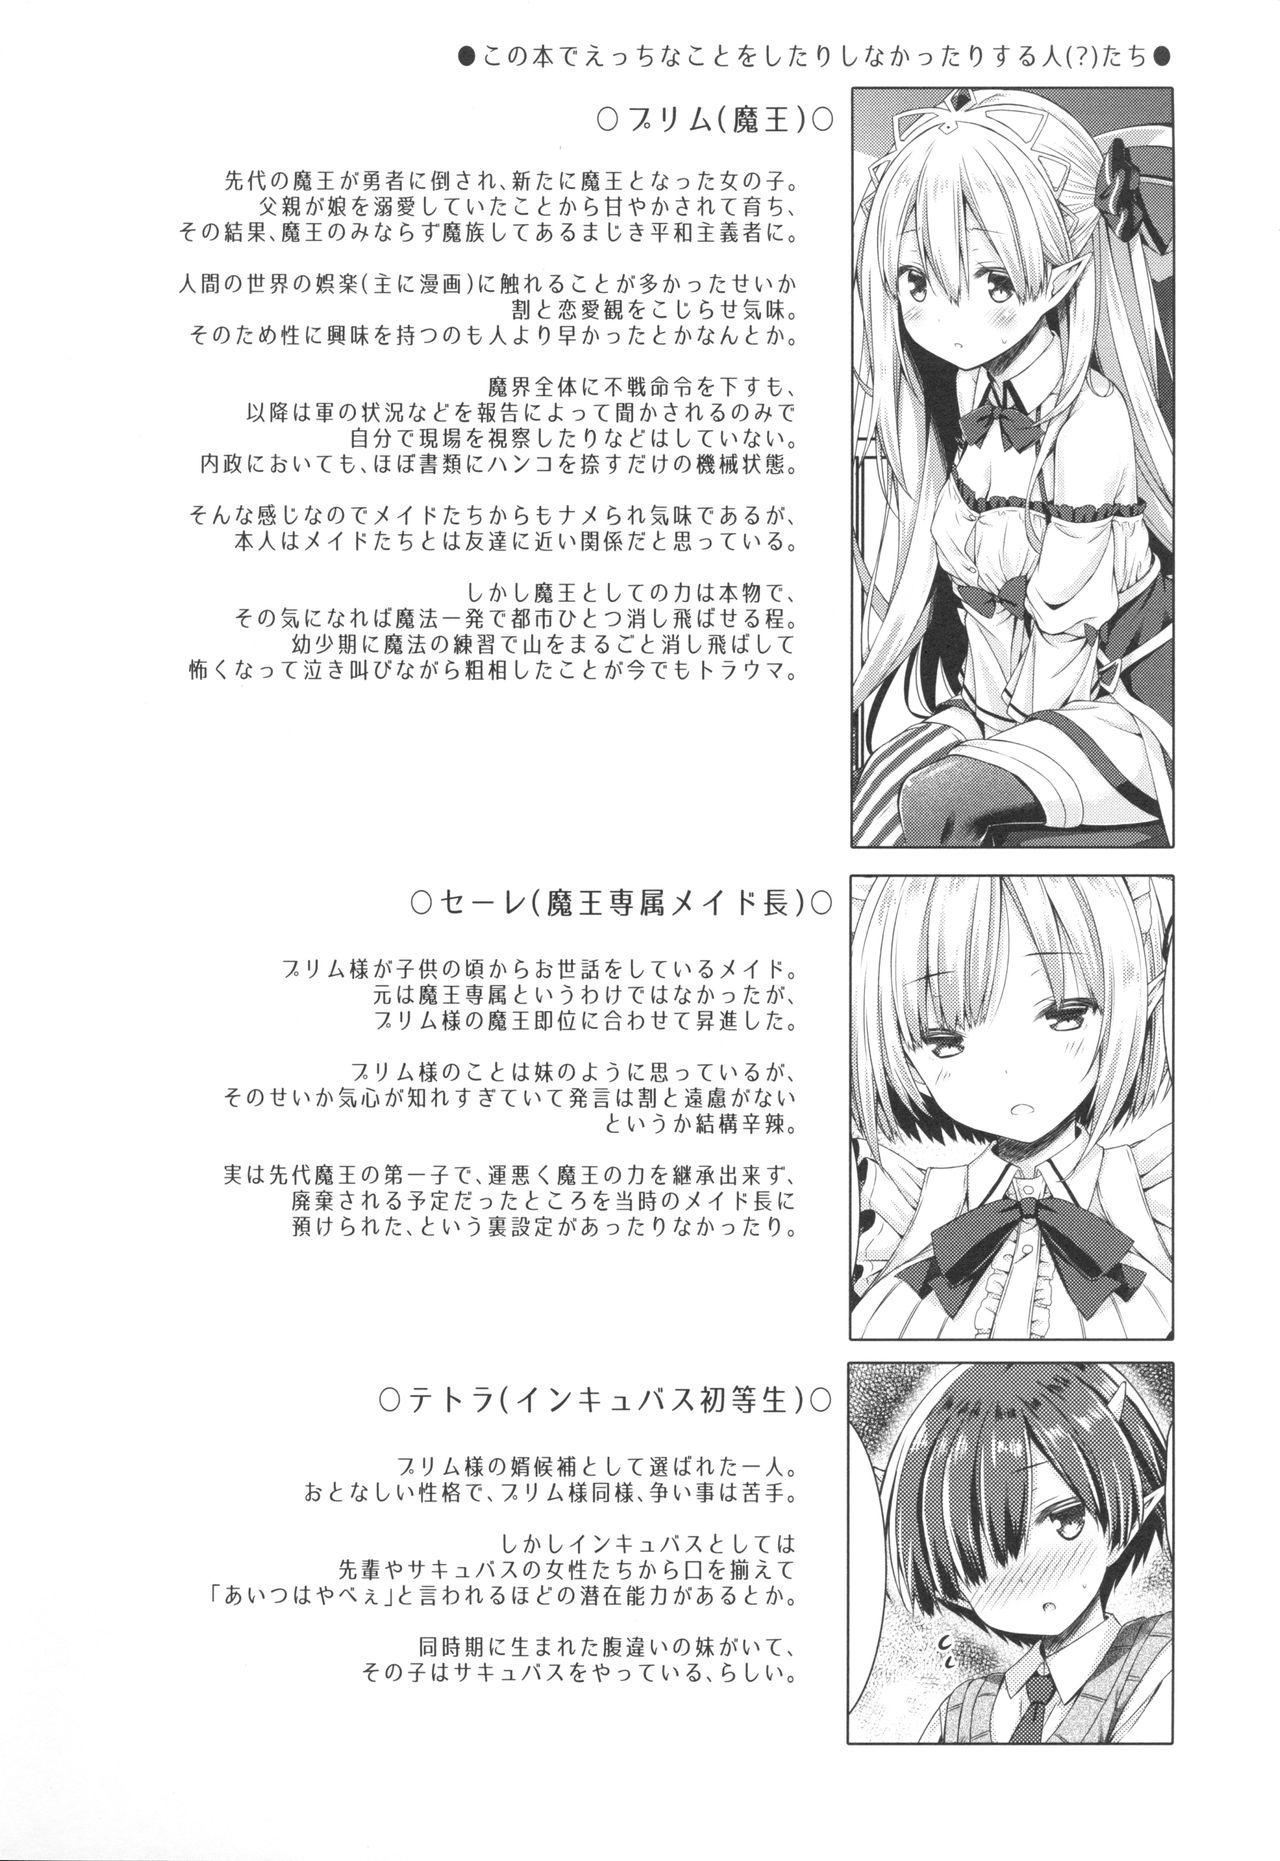 Blows Maou-sama o Taosu no ni Yuusha mo Seiken mo Irimasen. - Original Humiliation - Page 3